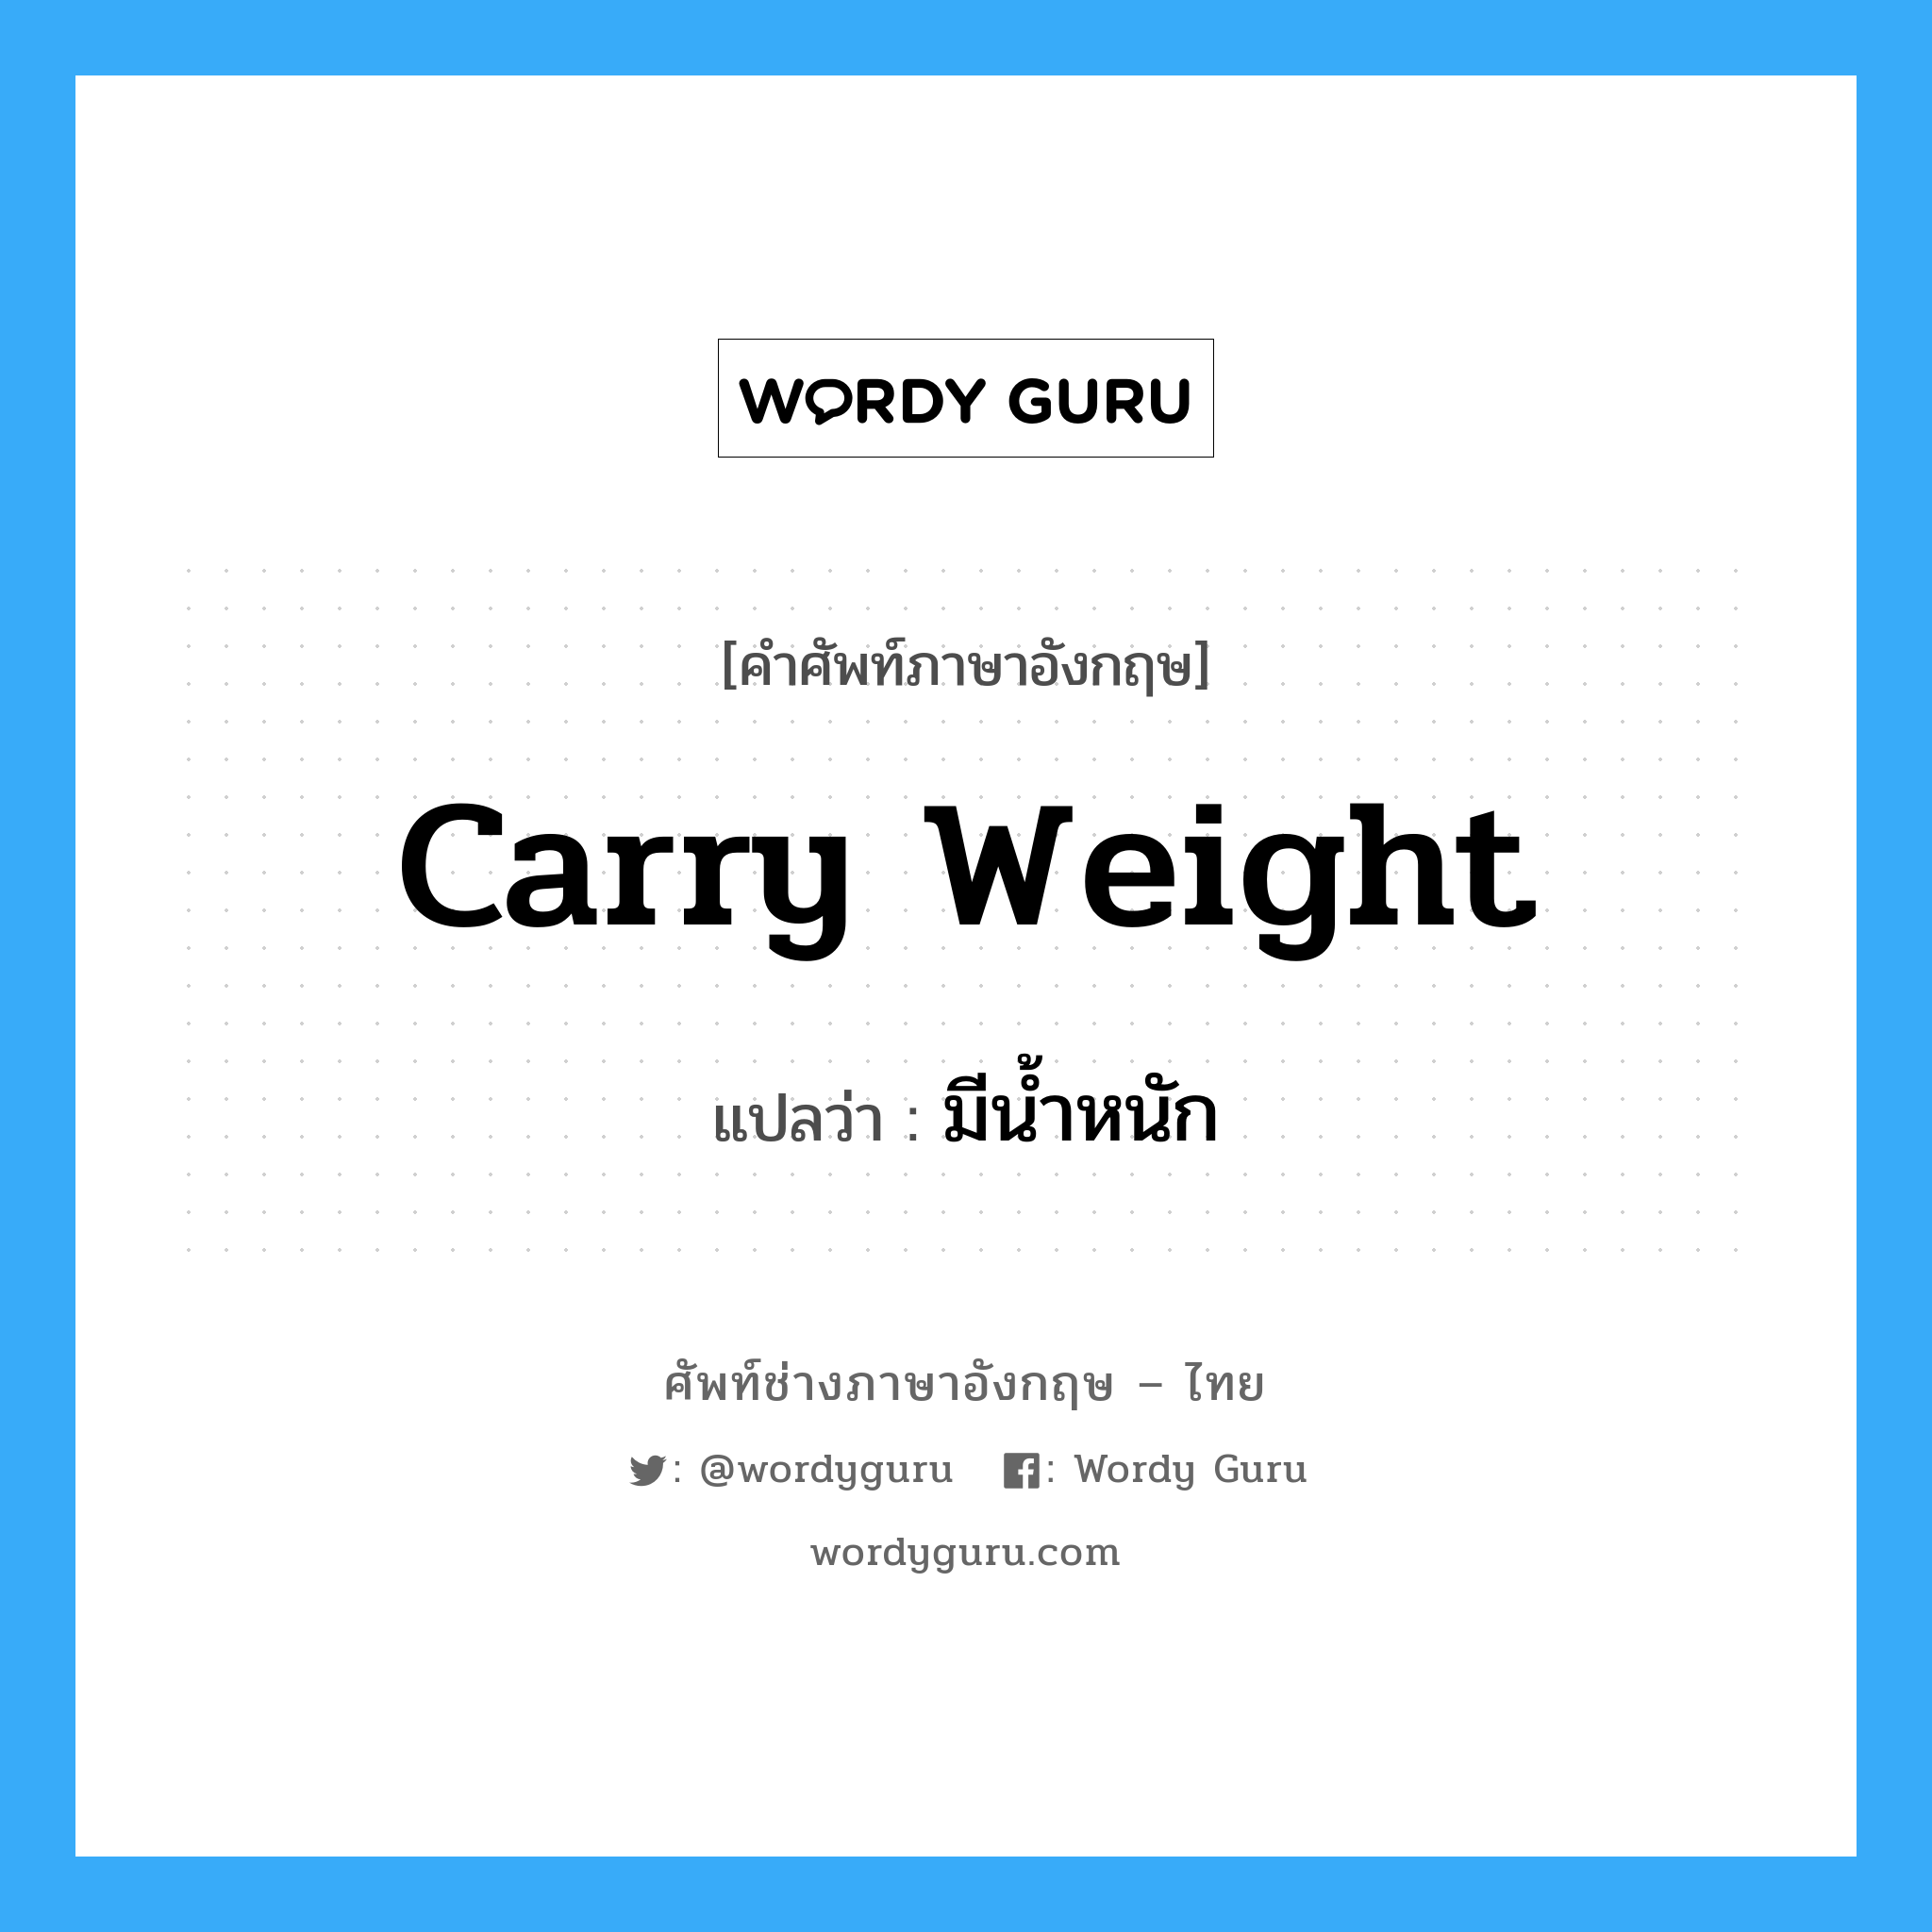 มีน้ำหนัก ภาษาอังกฤษ?, คำศัพท์ช่างภาษาอังกฤษ - ไทย มีน้ำหนัก คำศัพท์ภาษาอังกฤษ มีน้ำหนัก แปลว่า carry weight